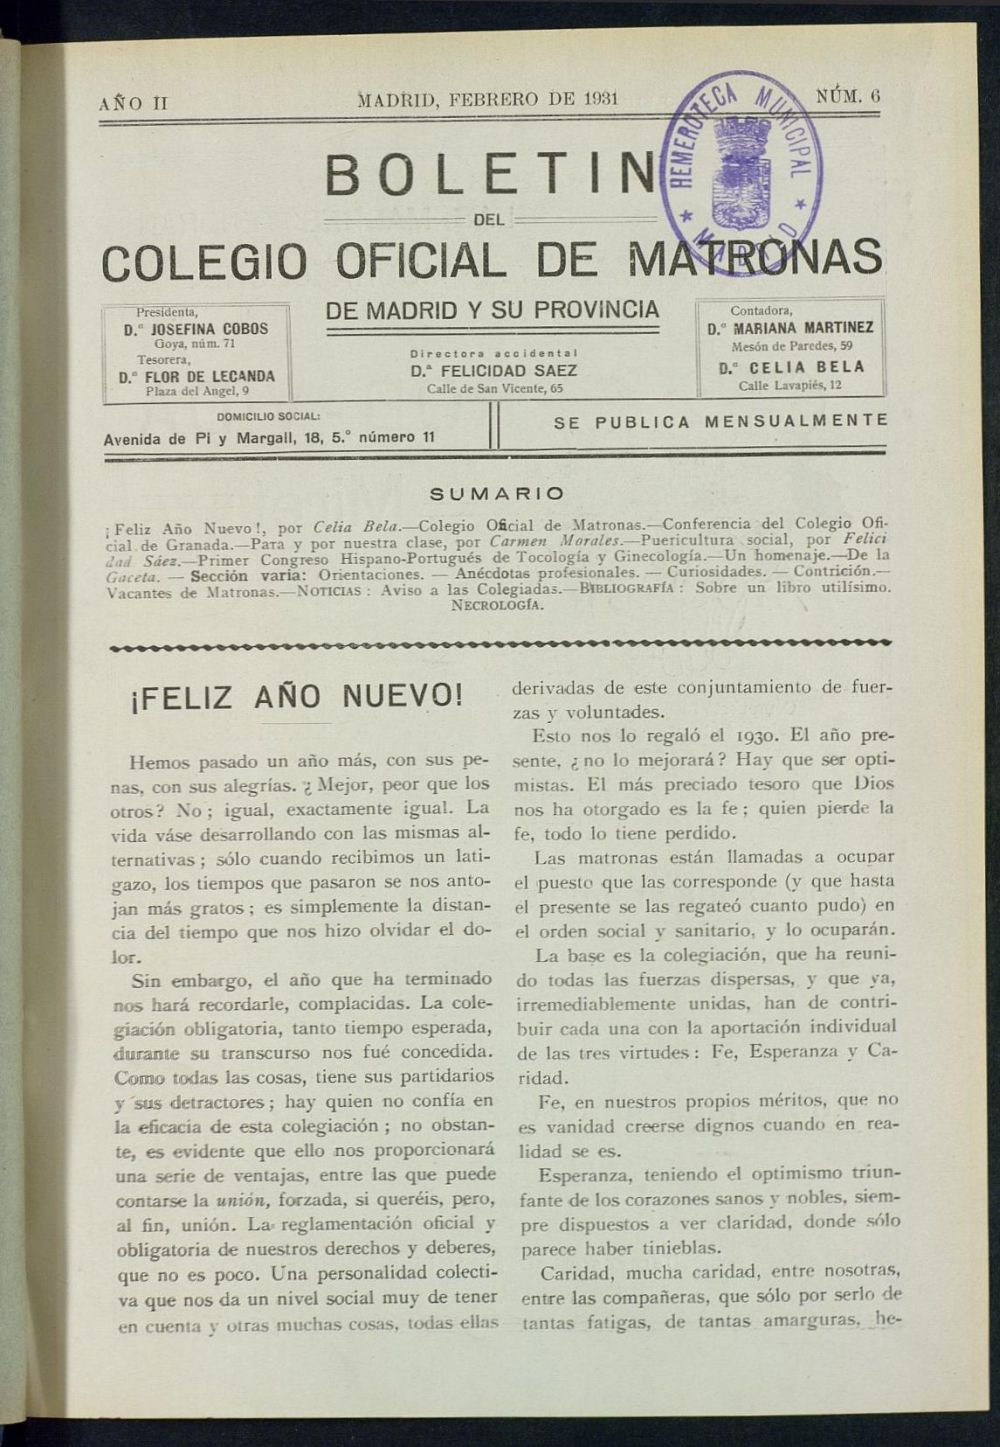 Boletn del Colegio Oficial de Matronas de Madrid y su Provincia de febrero de 1931